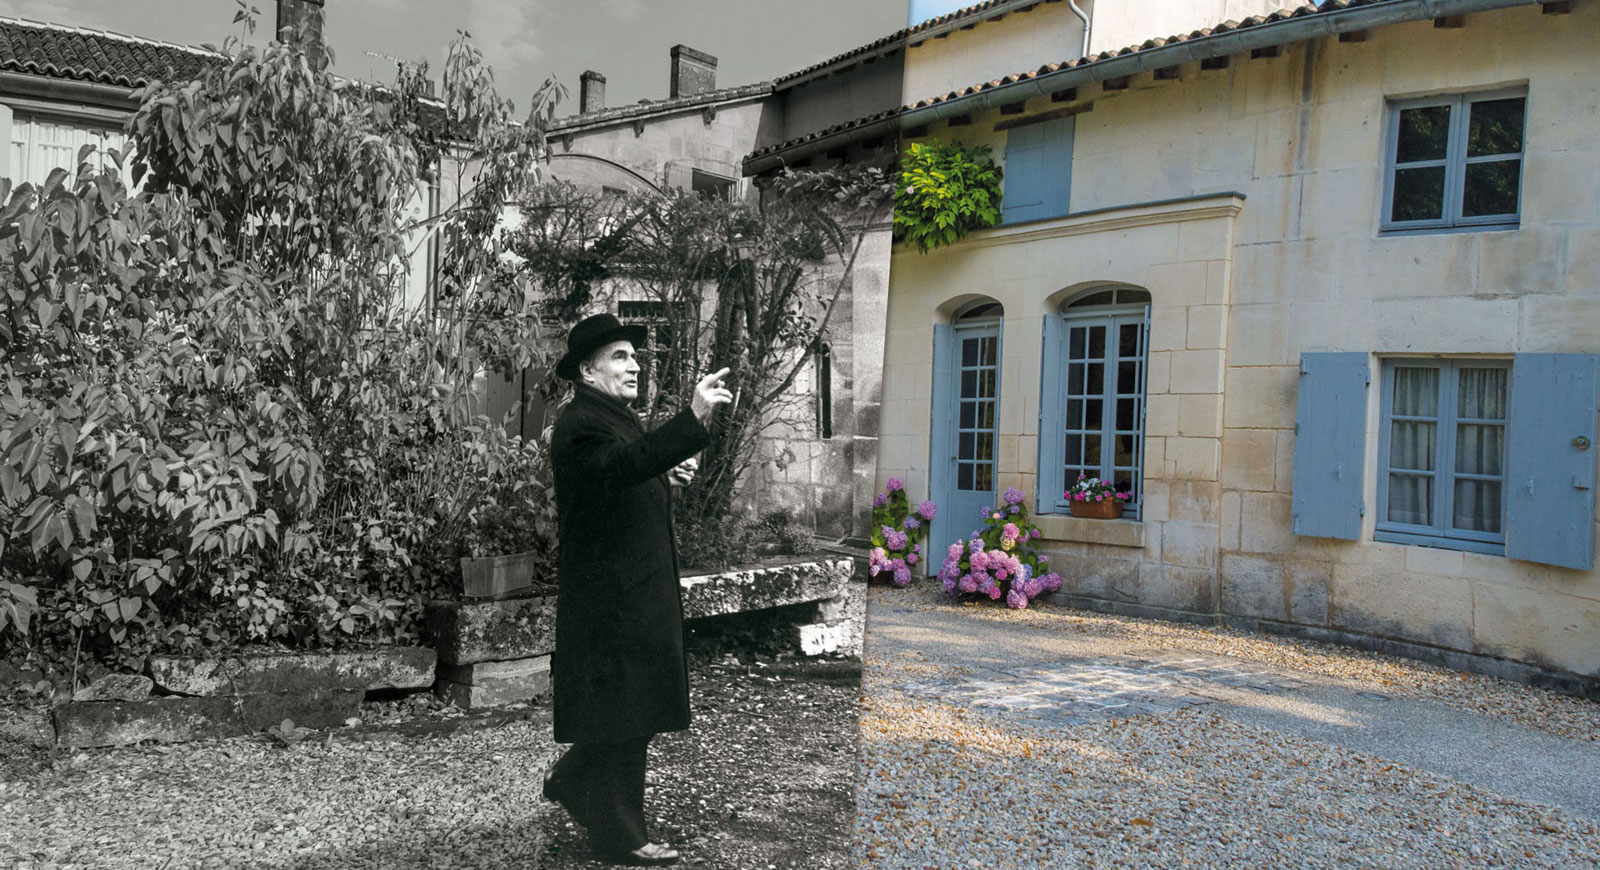 Accueil François Mitterrand dans sa maison natale Jarnac